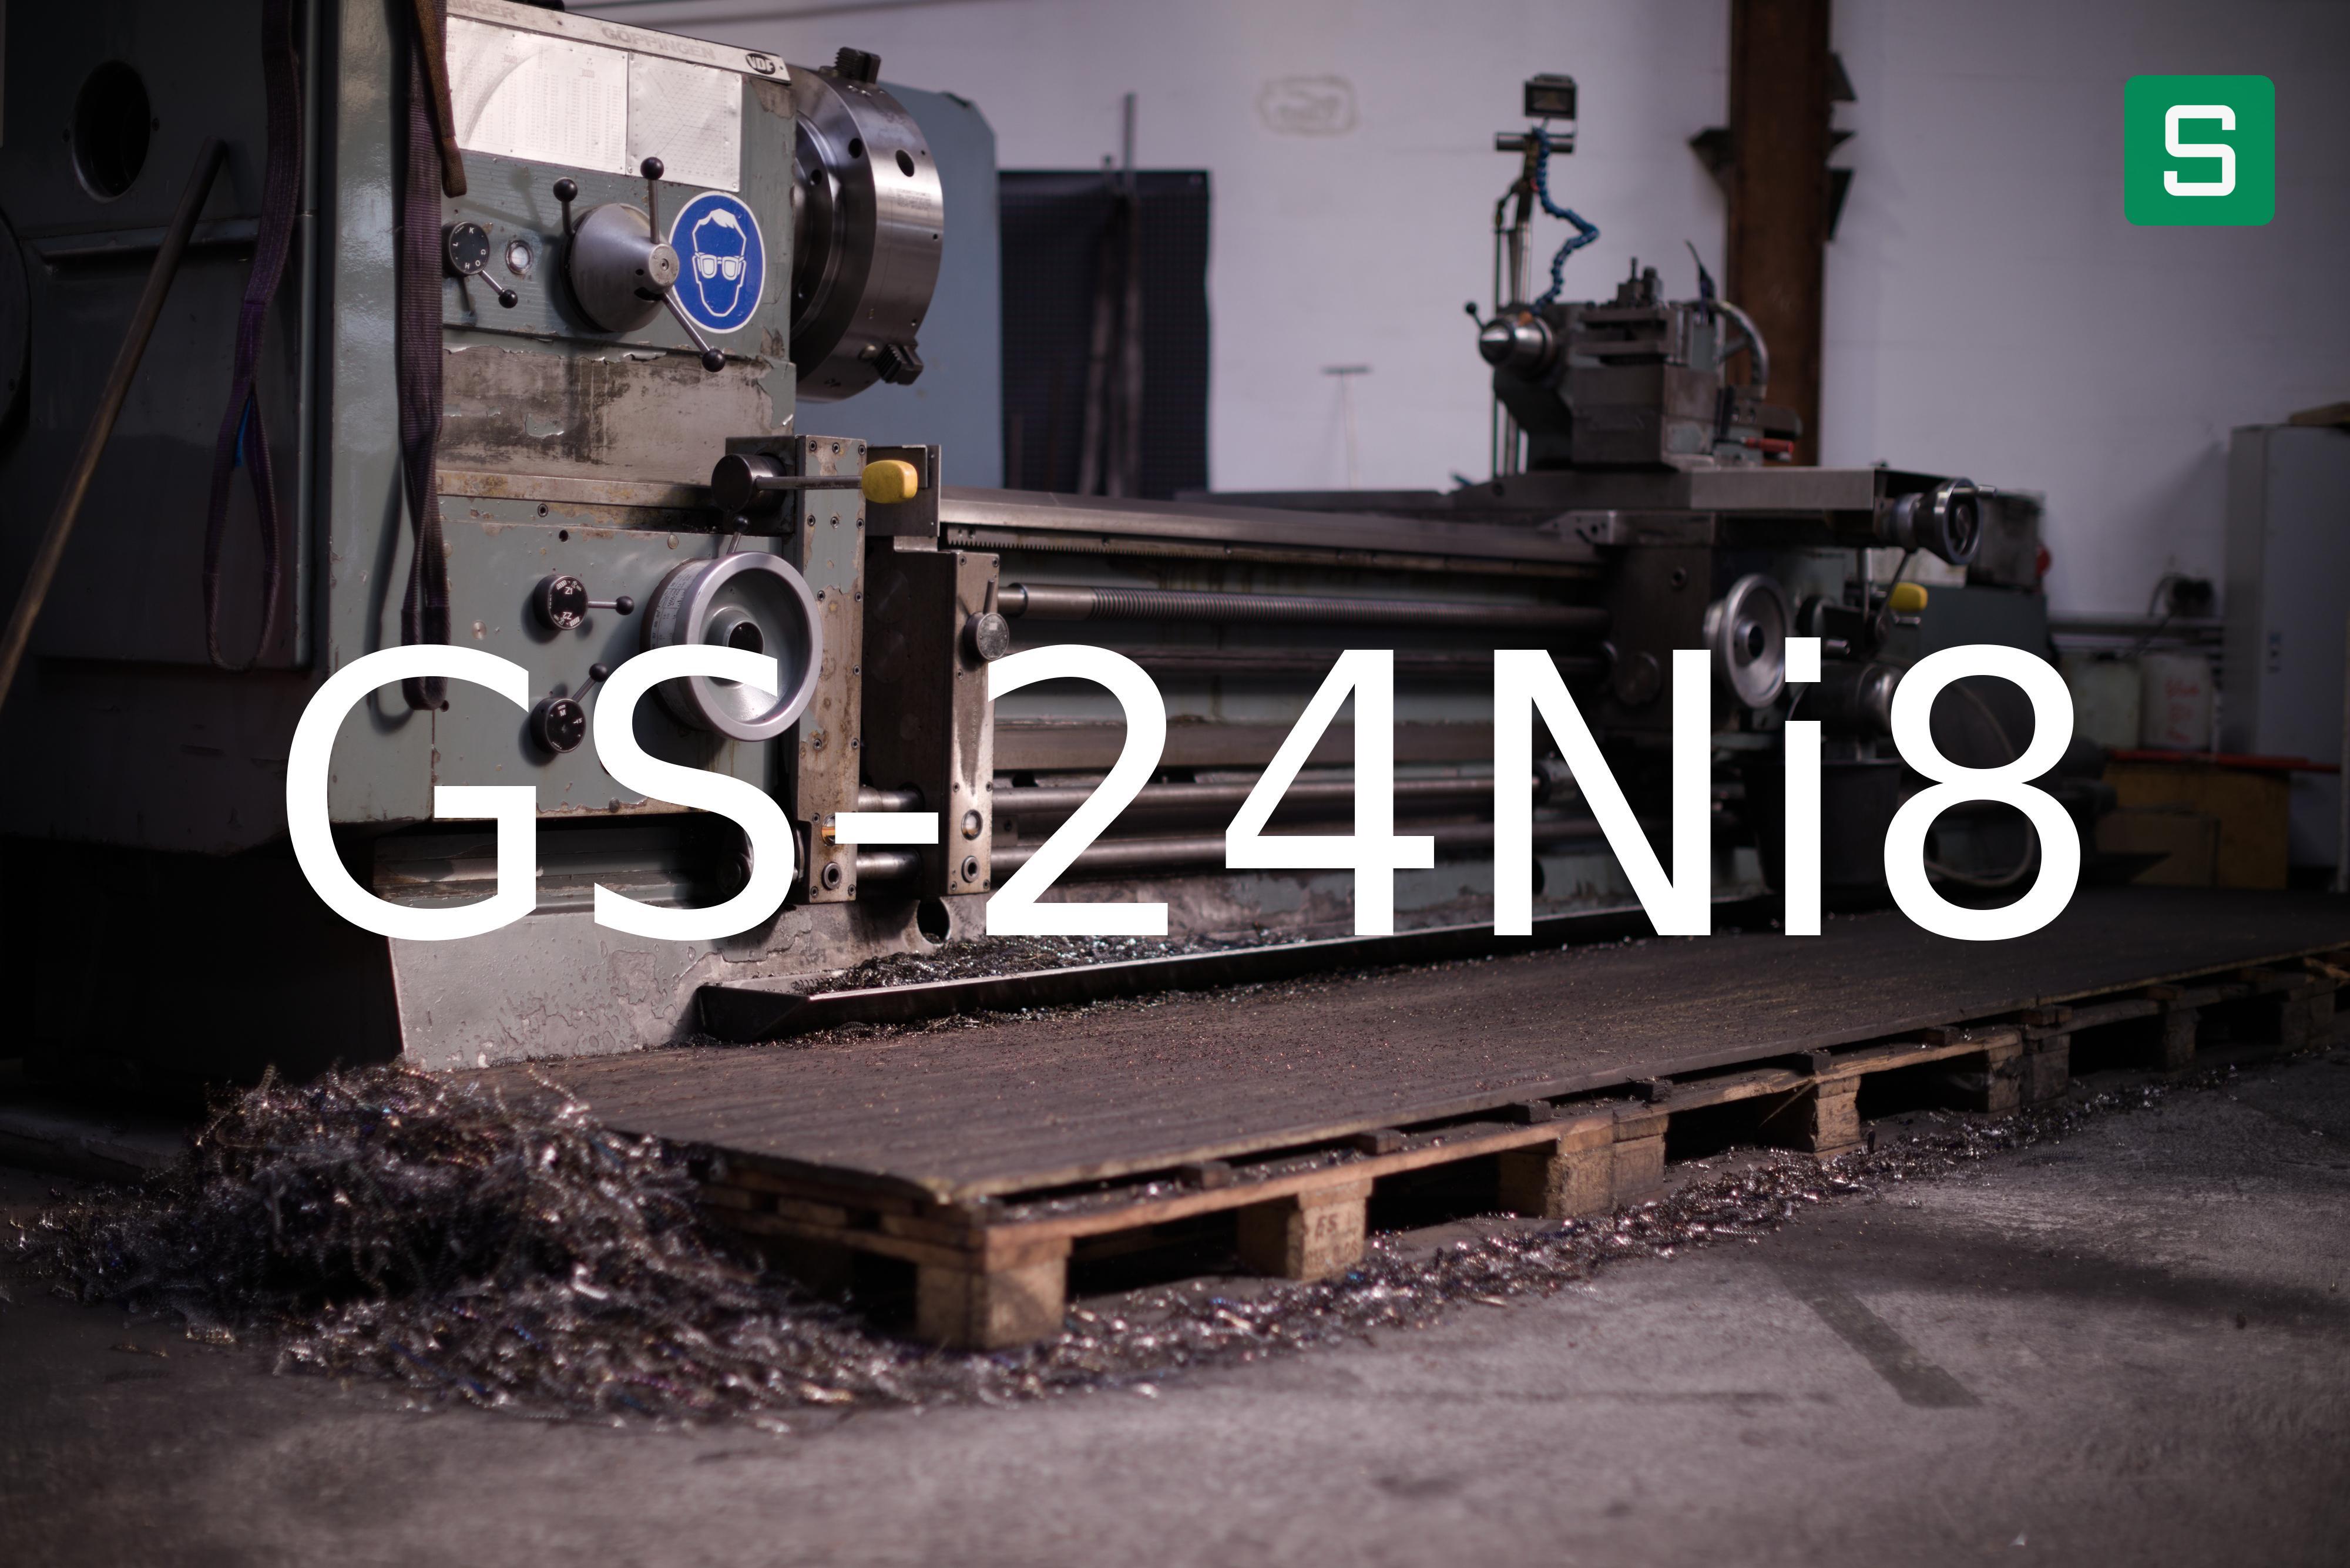 Steel Material: GS-24Ni8